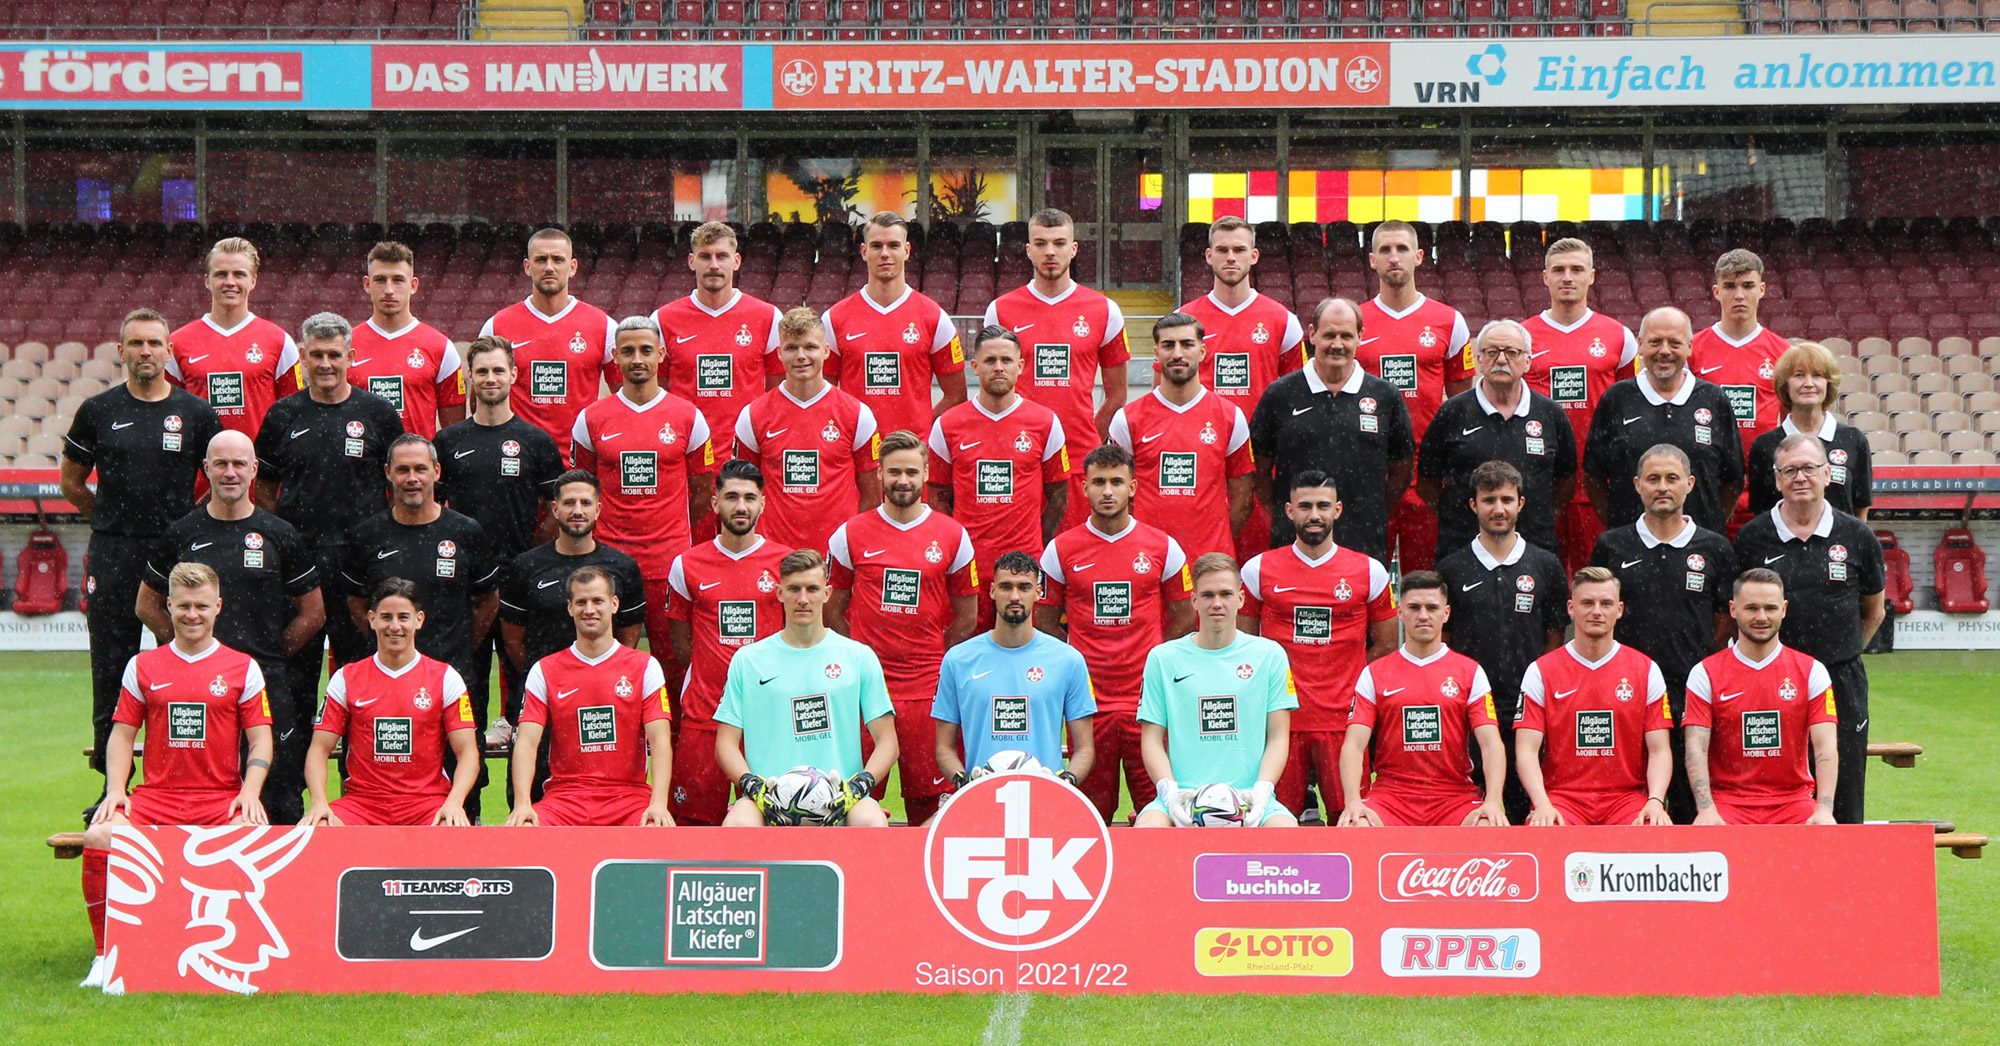 Das neue Mannschaftsfoto des 1. FC Kaiserslautern zur Saison 2021/22